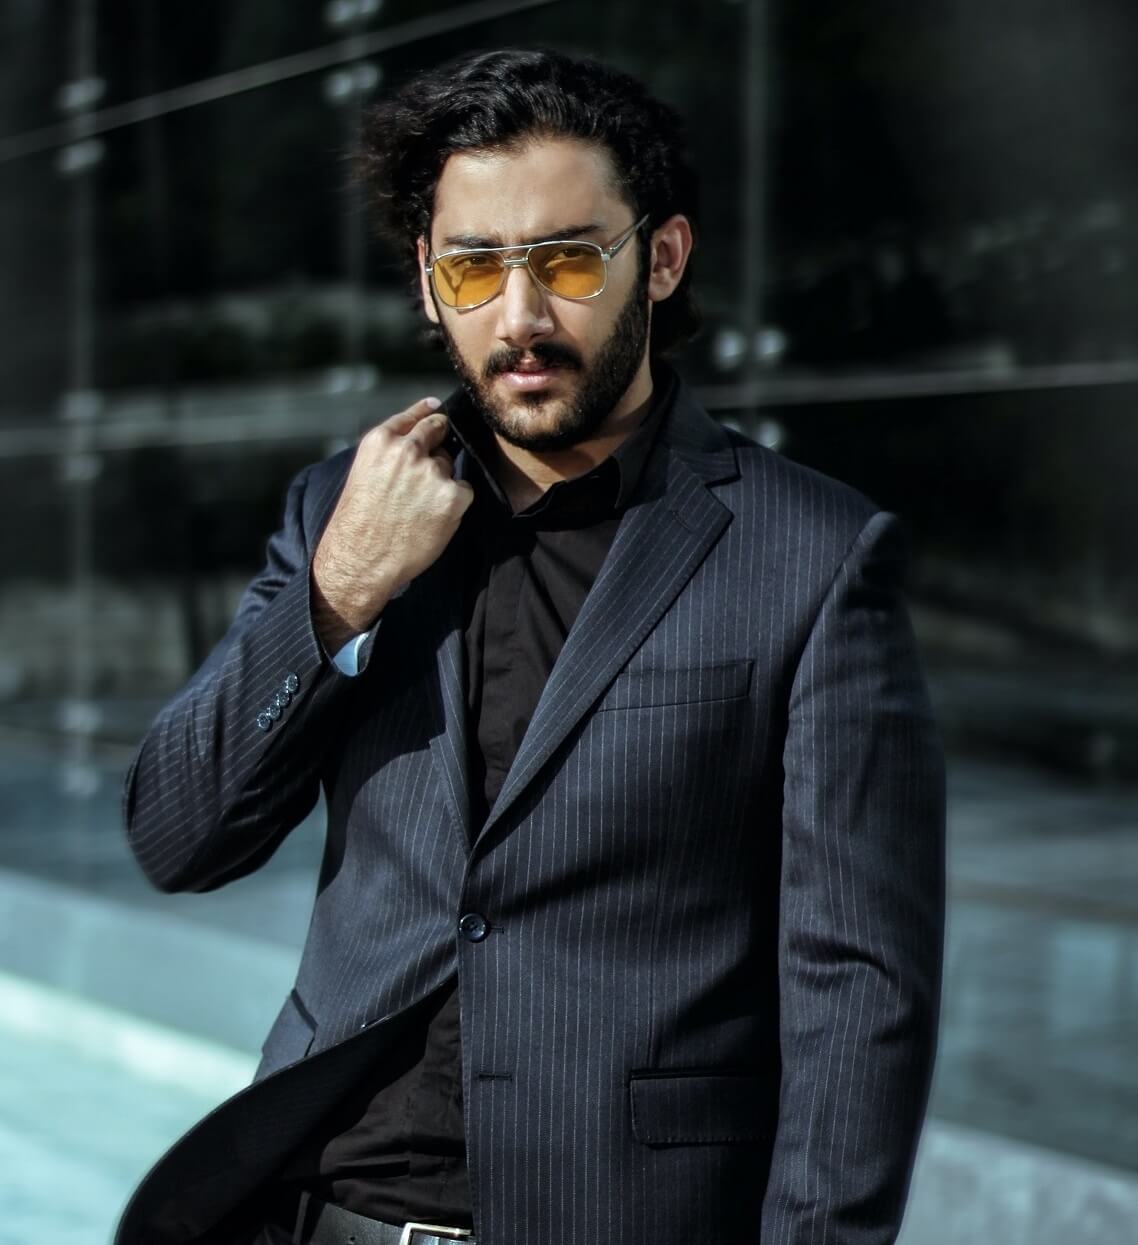 Gafas de sol con lentes amarillas: el complemento favorito de los hombres  que más saben de moda en 2020